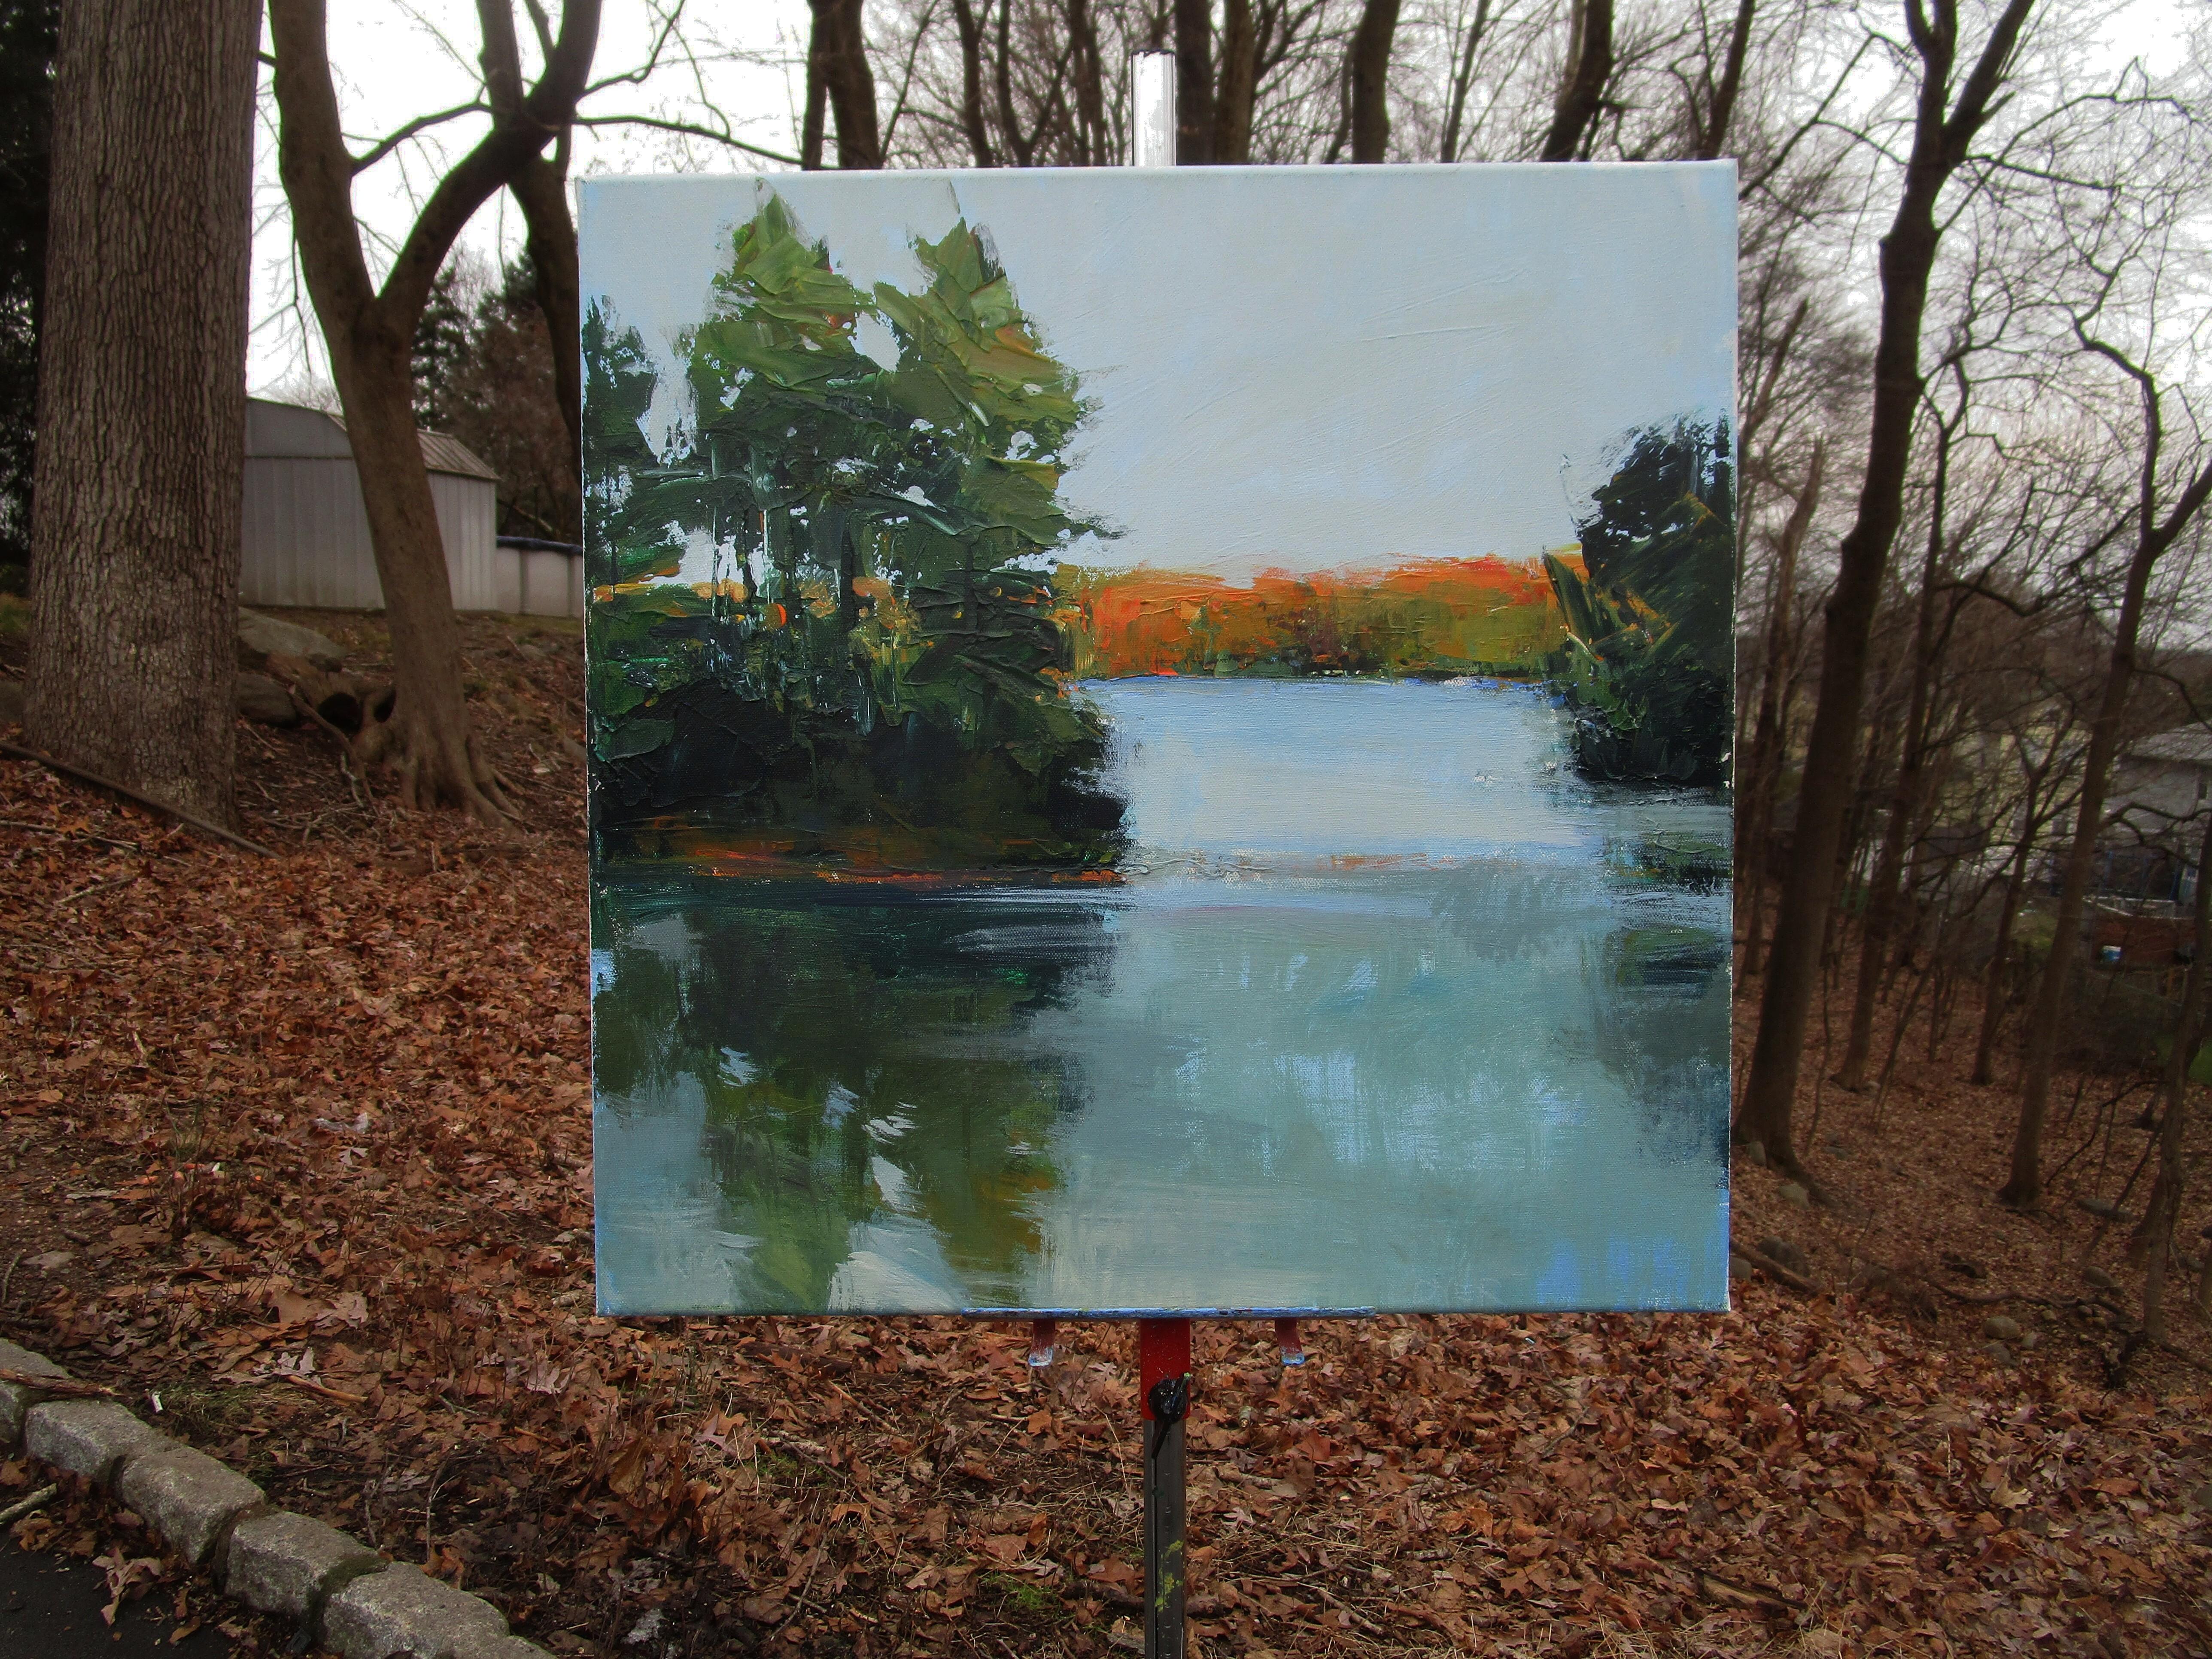 <p>Kommentare der KünstlerinDie Künstlerin Janet Dyer zeigt einen See bei Sonnenuntergang in einem State Park in der Nähe ihres Hauses.<br> Das ruhige Wasser spiegelt die Umgebung wider, während die entfernte Baumgrenze noch in die letzten